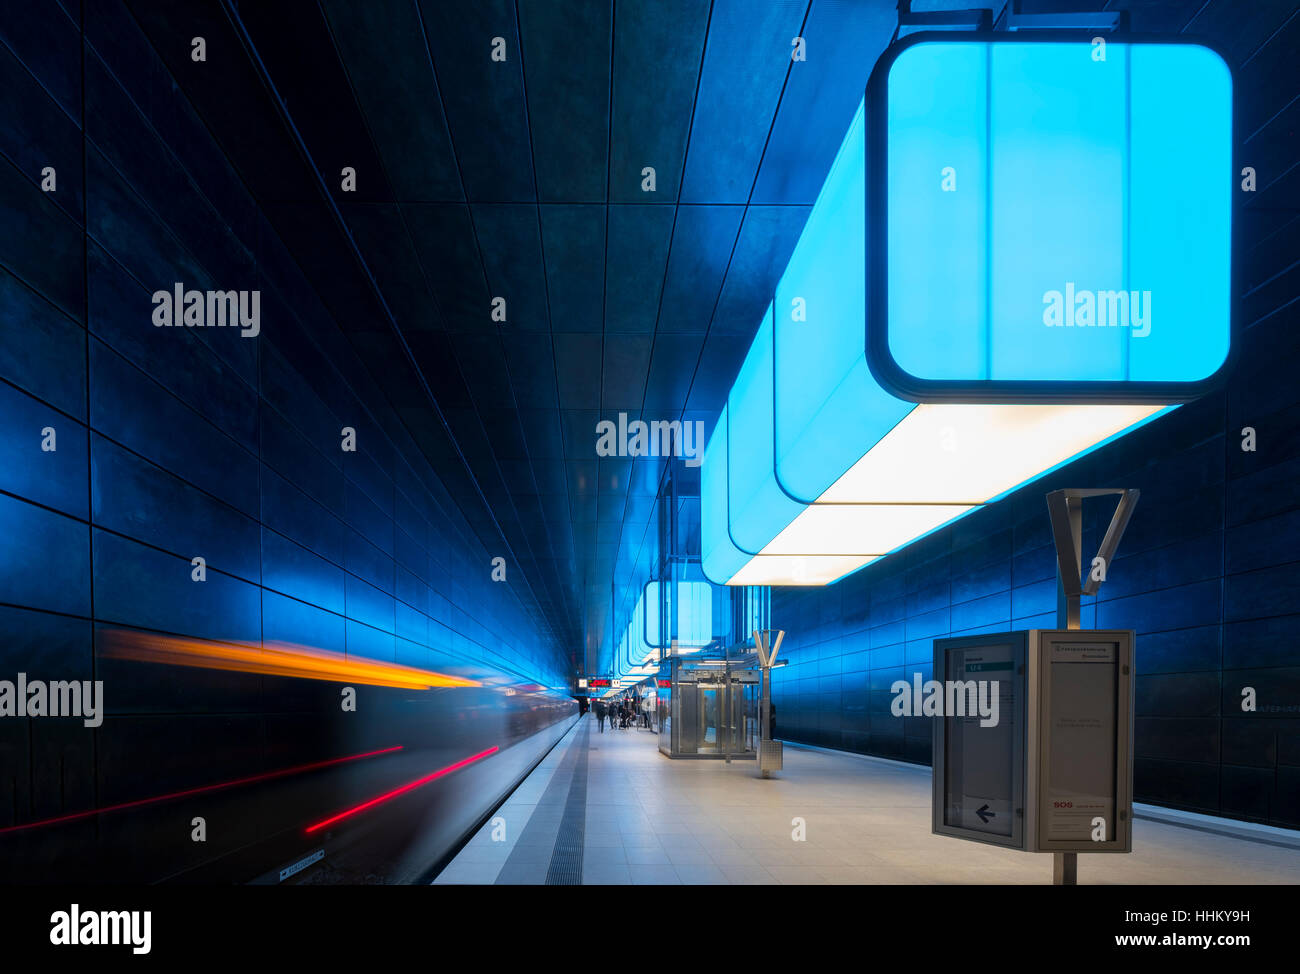 Innenraum der u-Bahn-Station Hafencity Universität in Hamburg, Deutschland Stockfoto